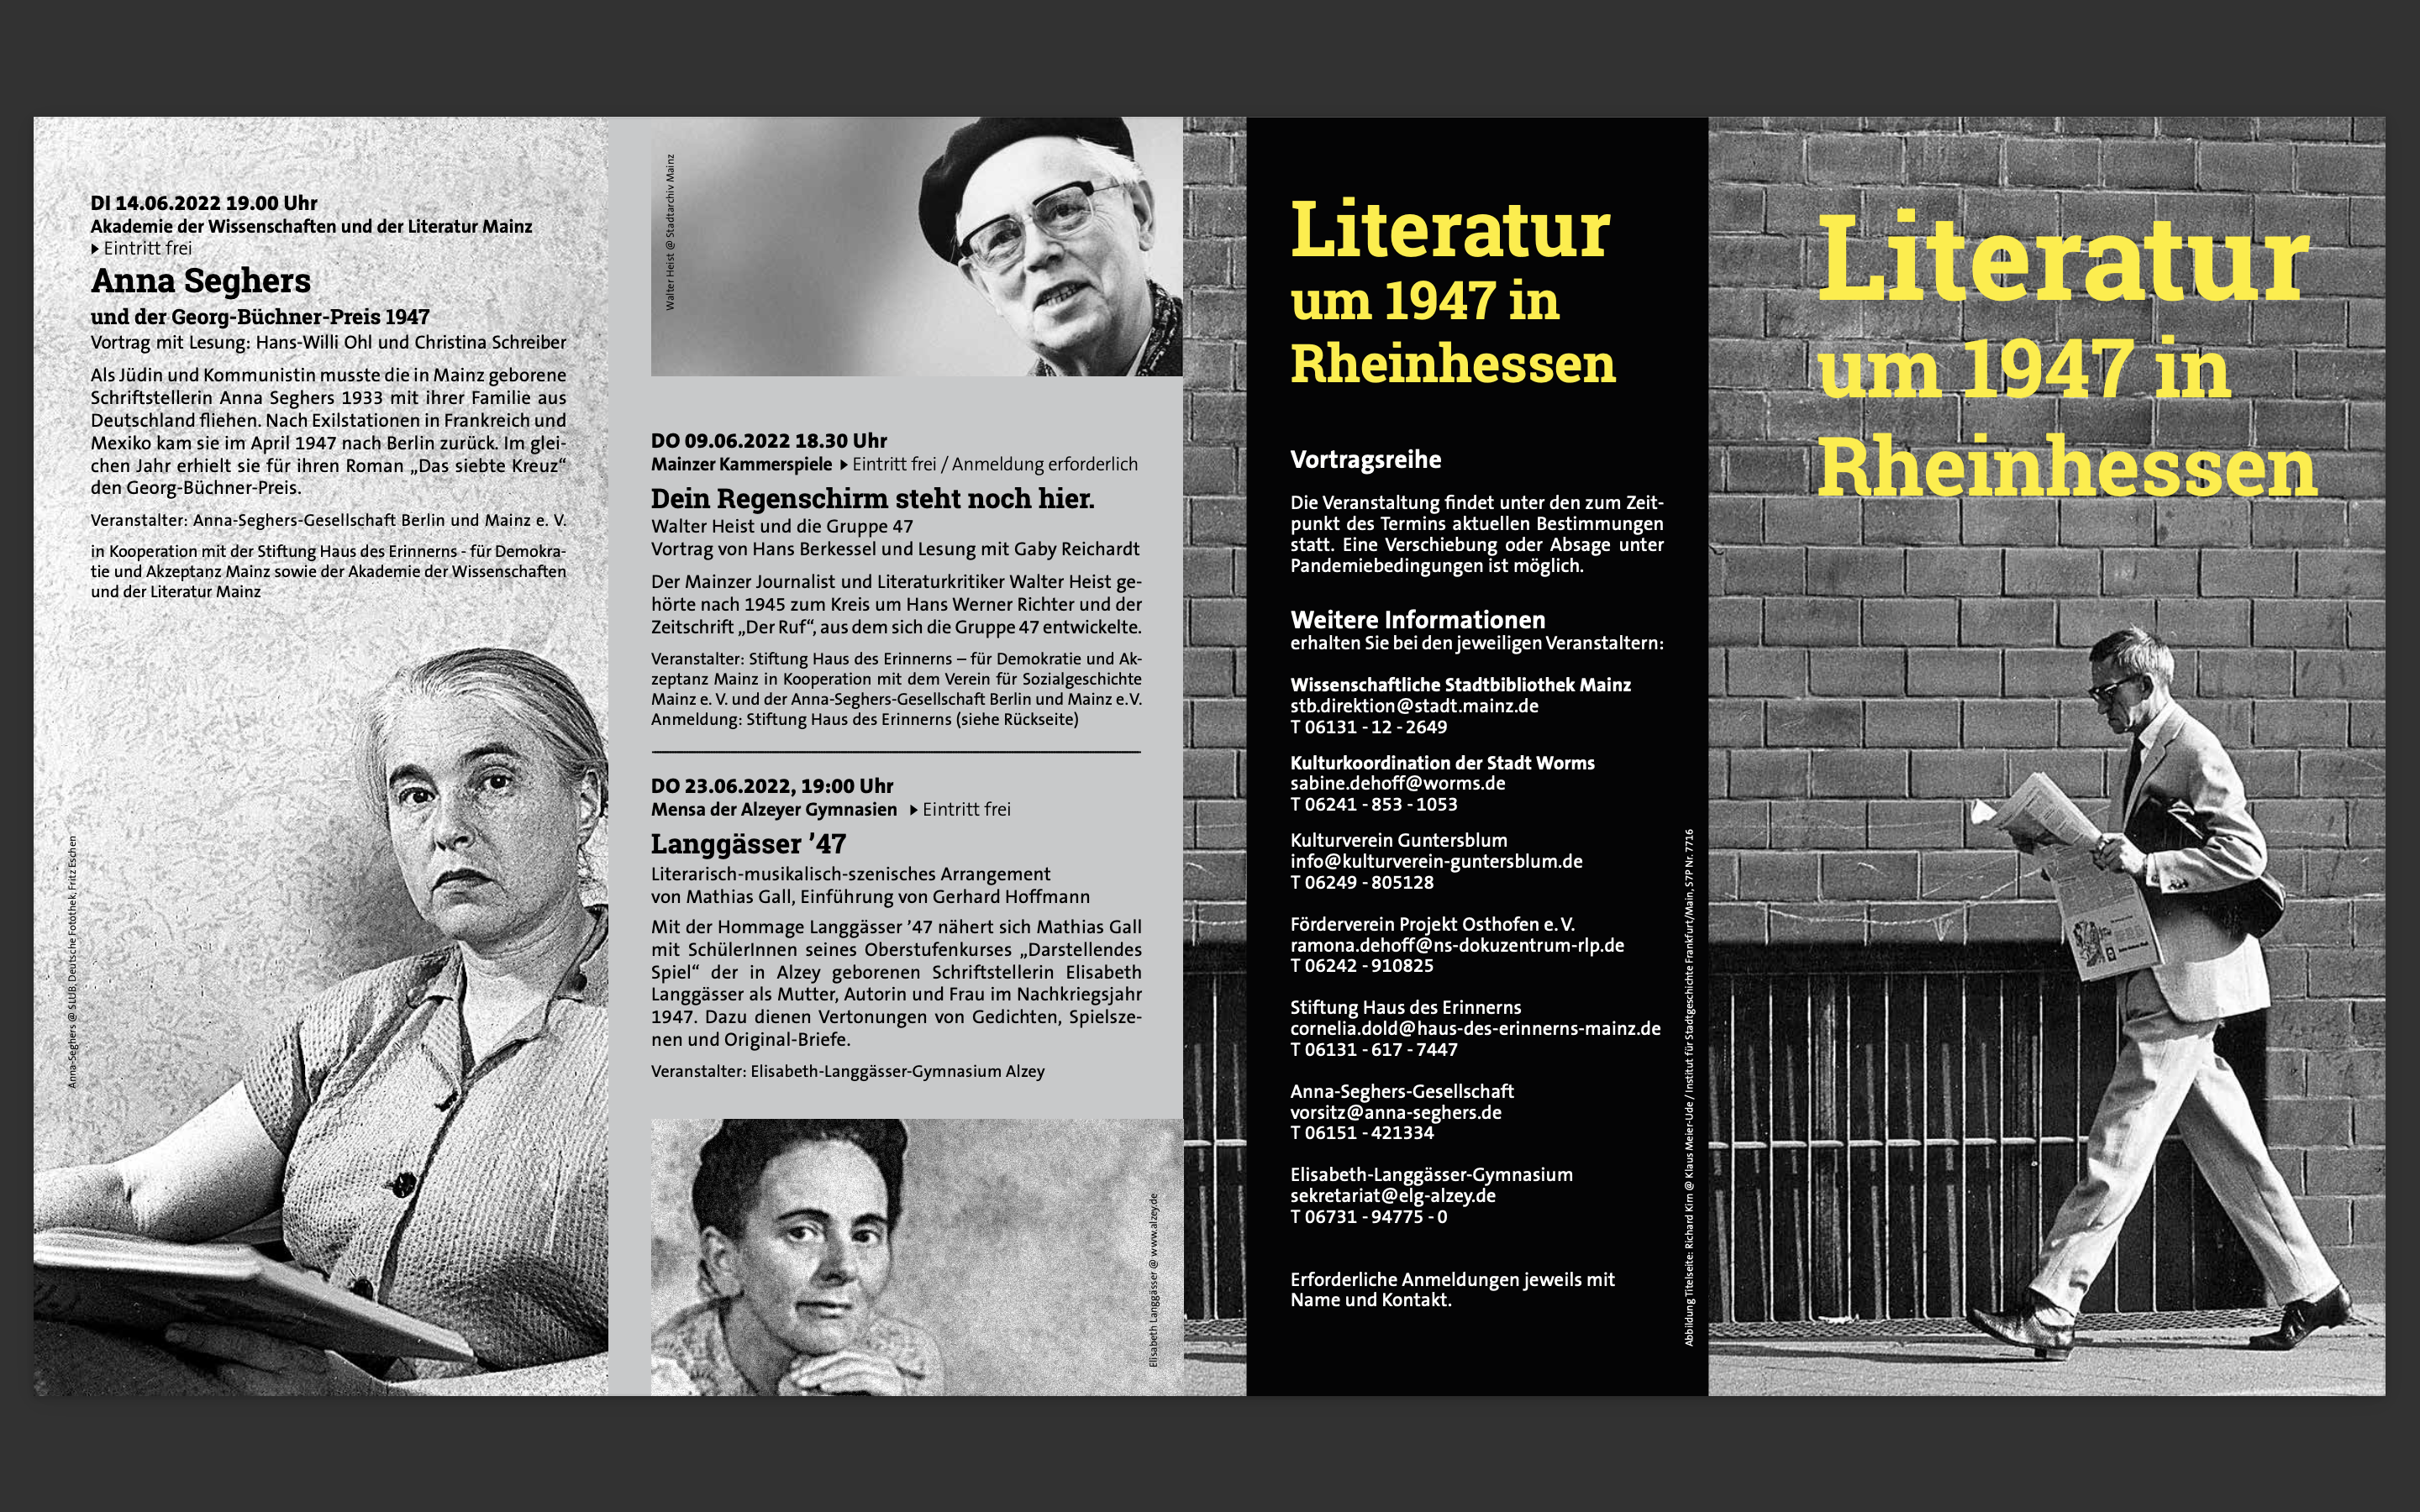 Hinweis auf die Vortragsreihe zur Literatur um 1947 in Rheinhessen